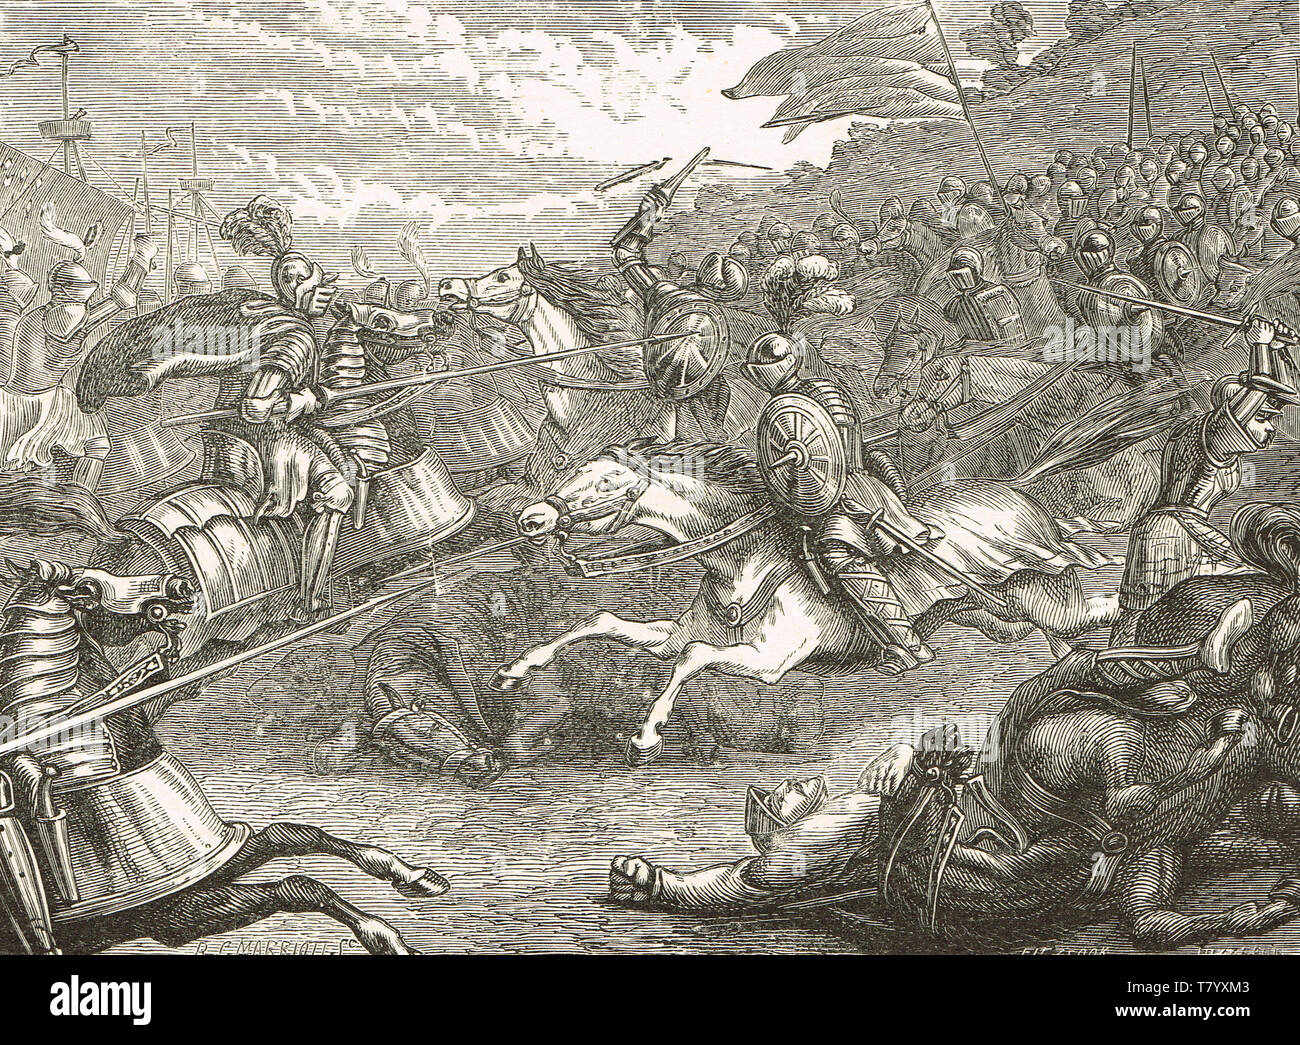 Herr Grau von Wilton führt die Kavallerie in der Schlacht von Pinkie Cleugh, 10. September 1547 Stockfoto